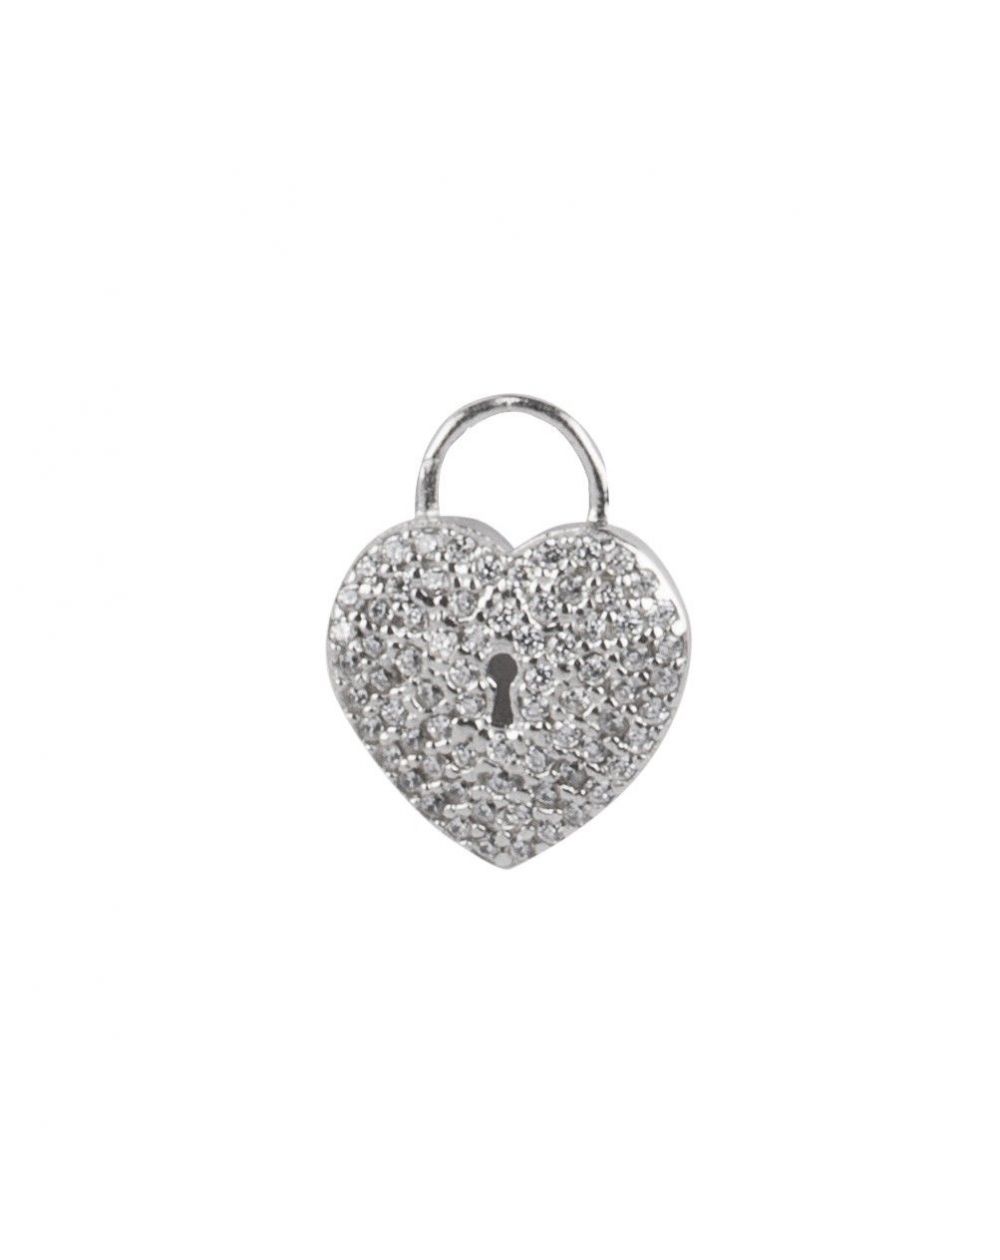 Bijou en argent - Heart pendant and lock